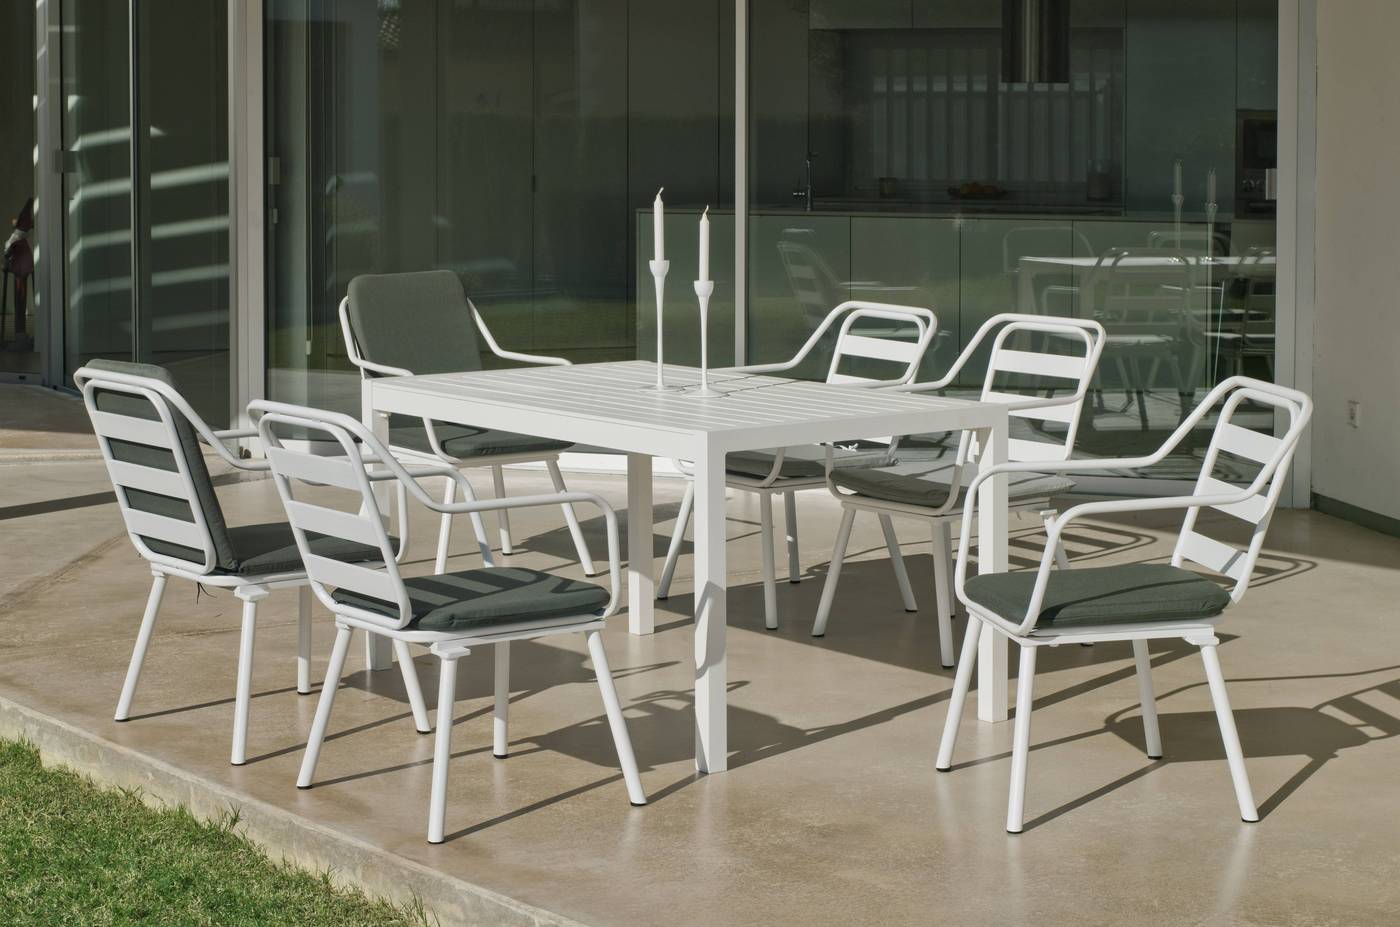 Sillón Aluminio Luxe Minerva - Sillón de jardín apilable de aluminio luxe. Disponible en color blanco o antracita.